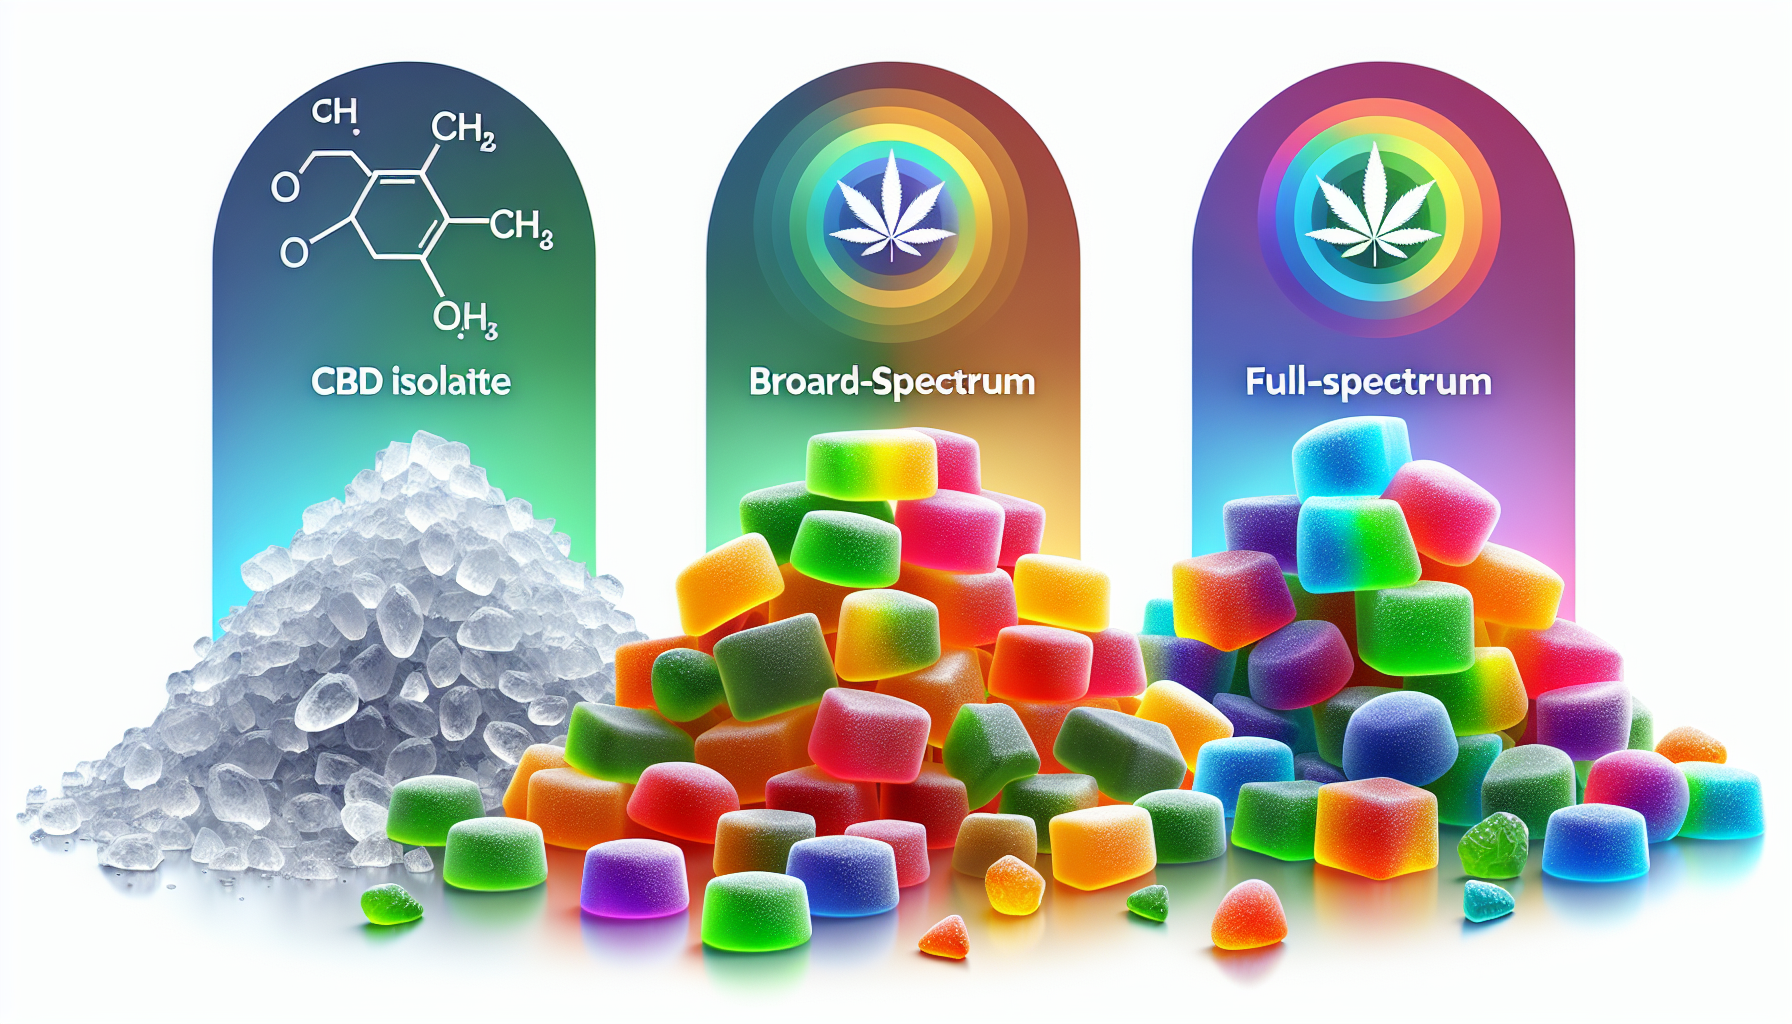 Comparison of CBD isolate, broad-spectrum, and full-spectrum CBD gummies